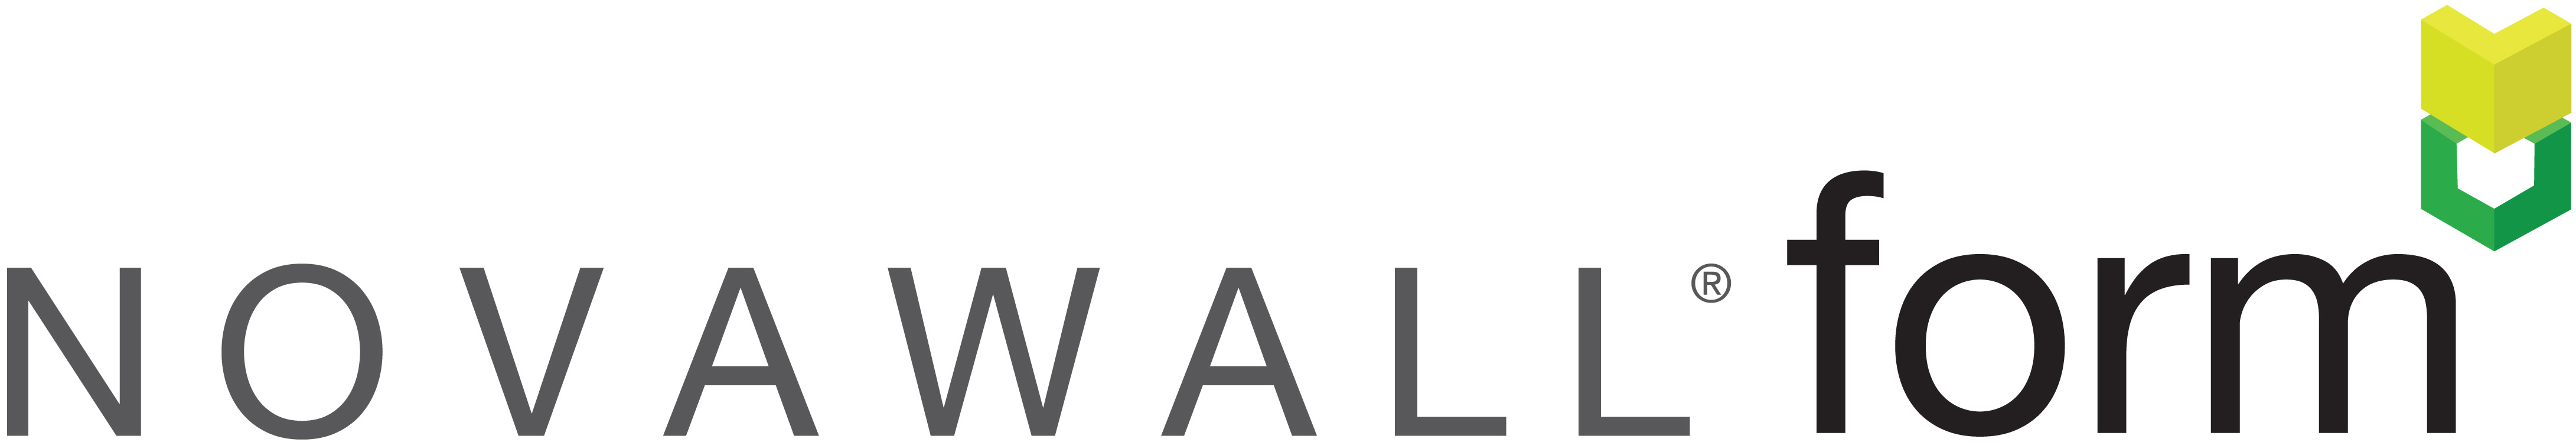 Novawall Form Logo